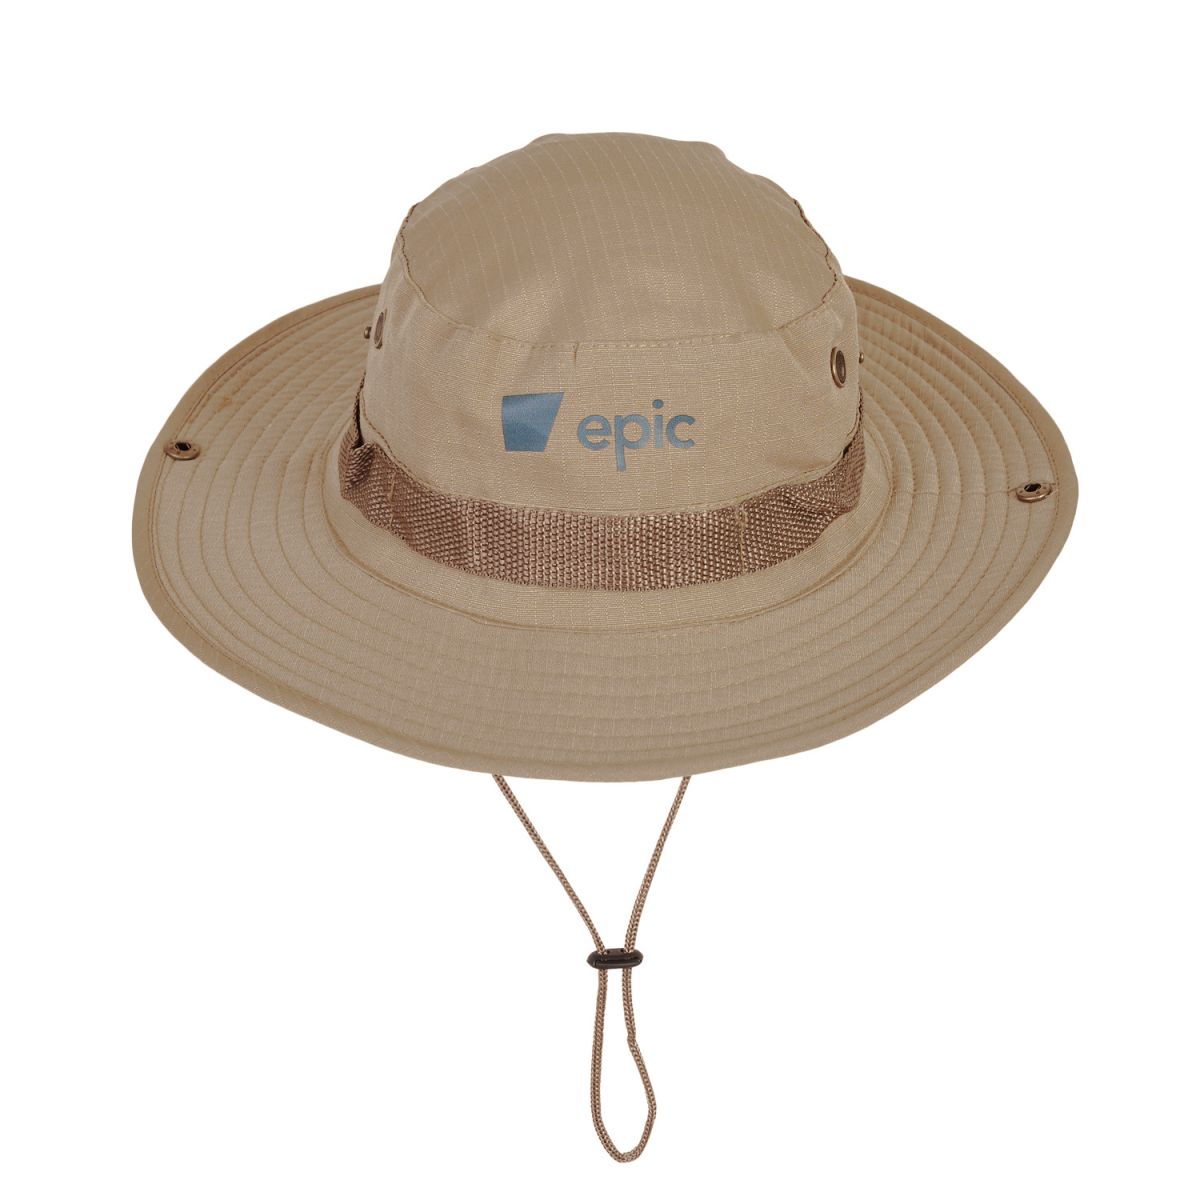 Epic Sombrero Australiano